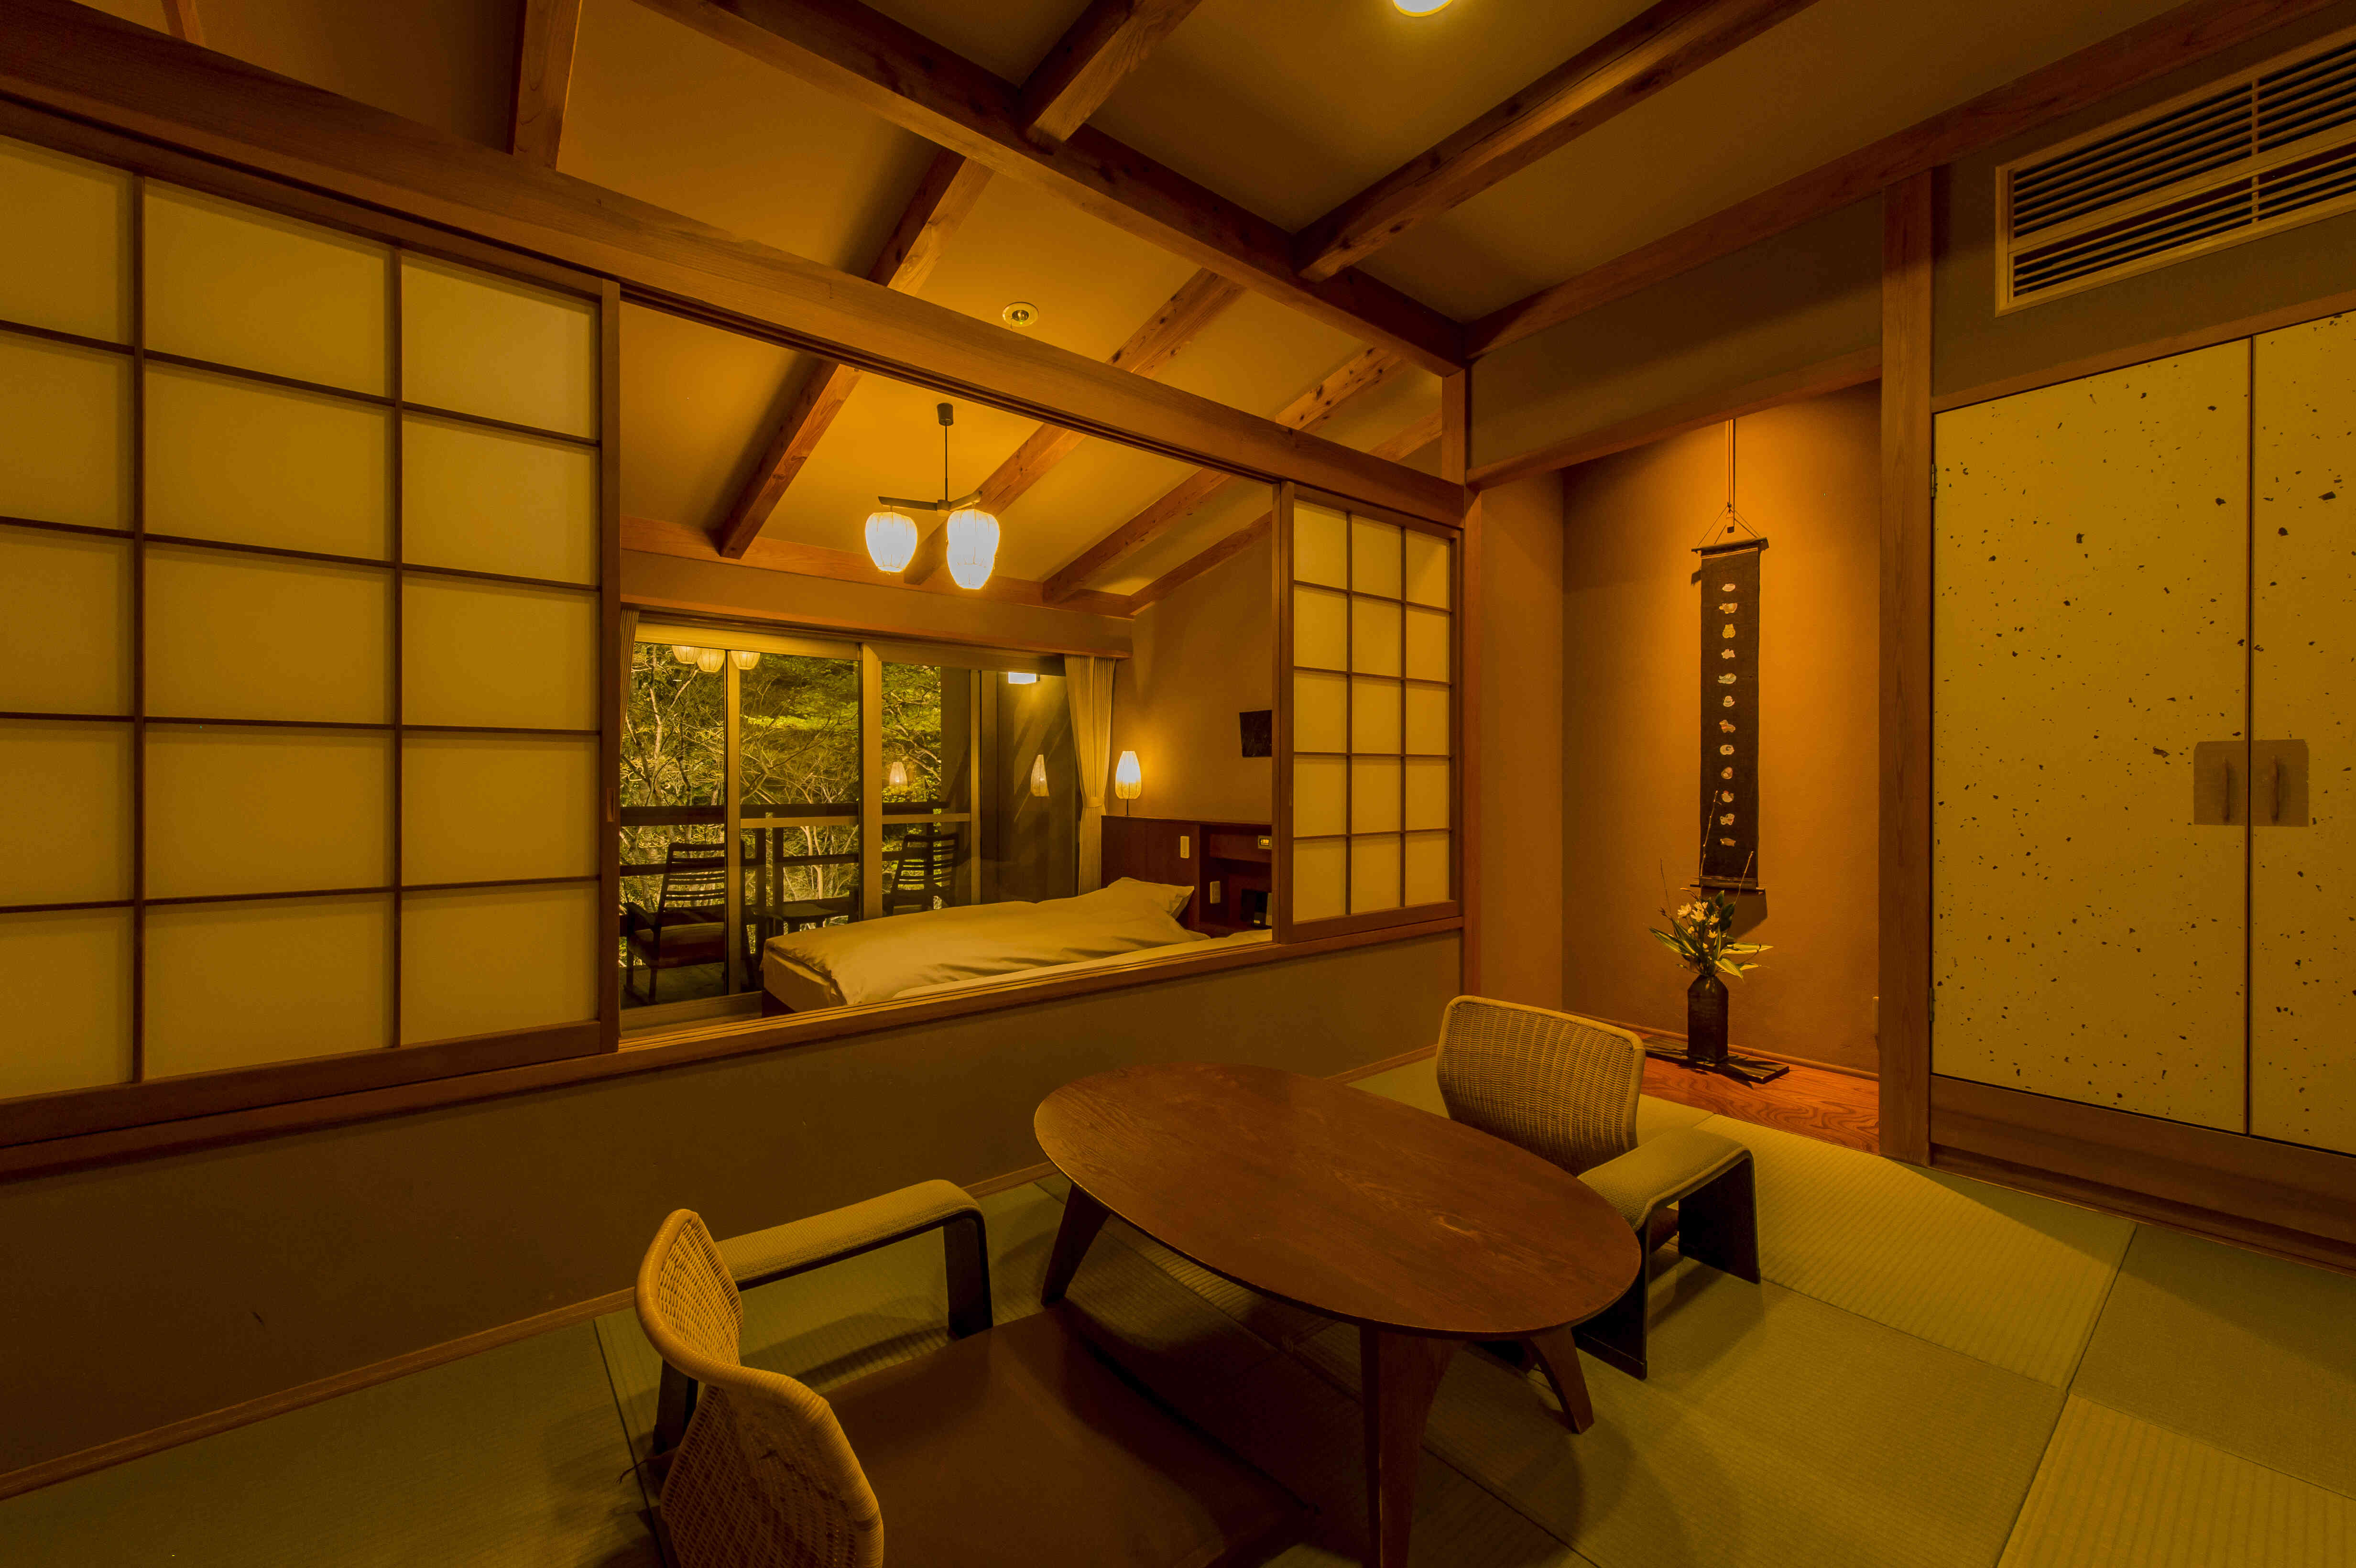 和の雰囲気と現代的な機能を持ち合わせた客室、シンプルで調和のとれた和洋室